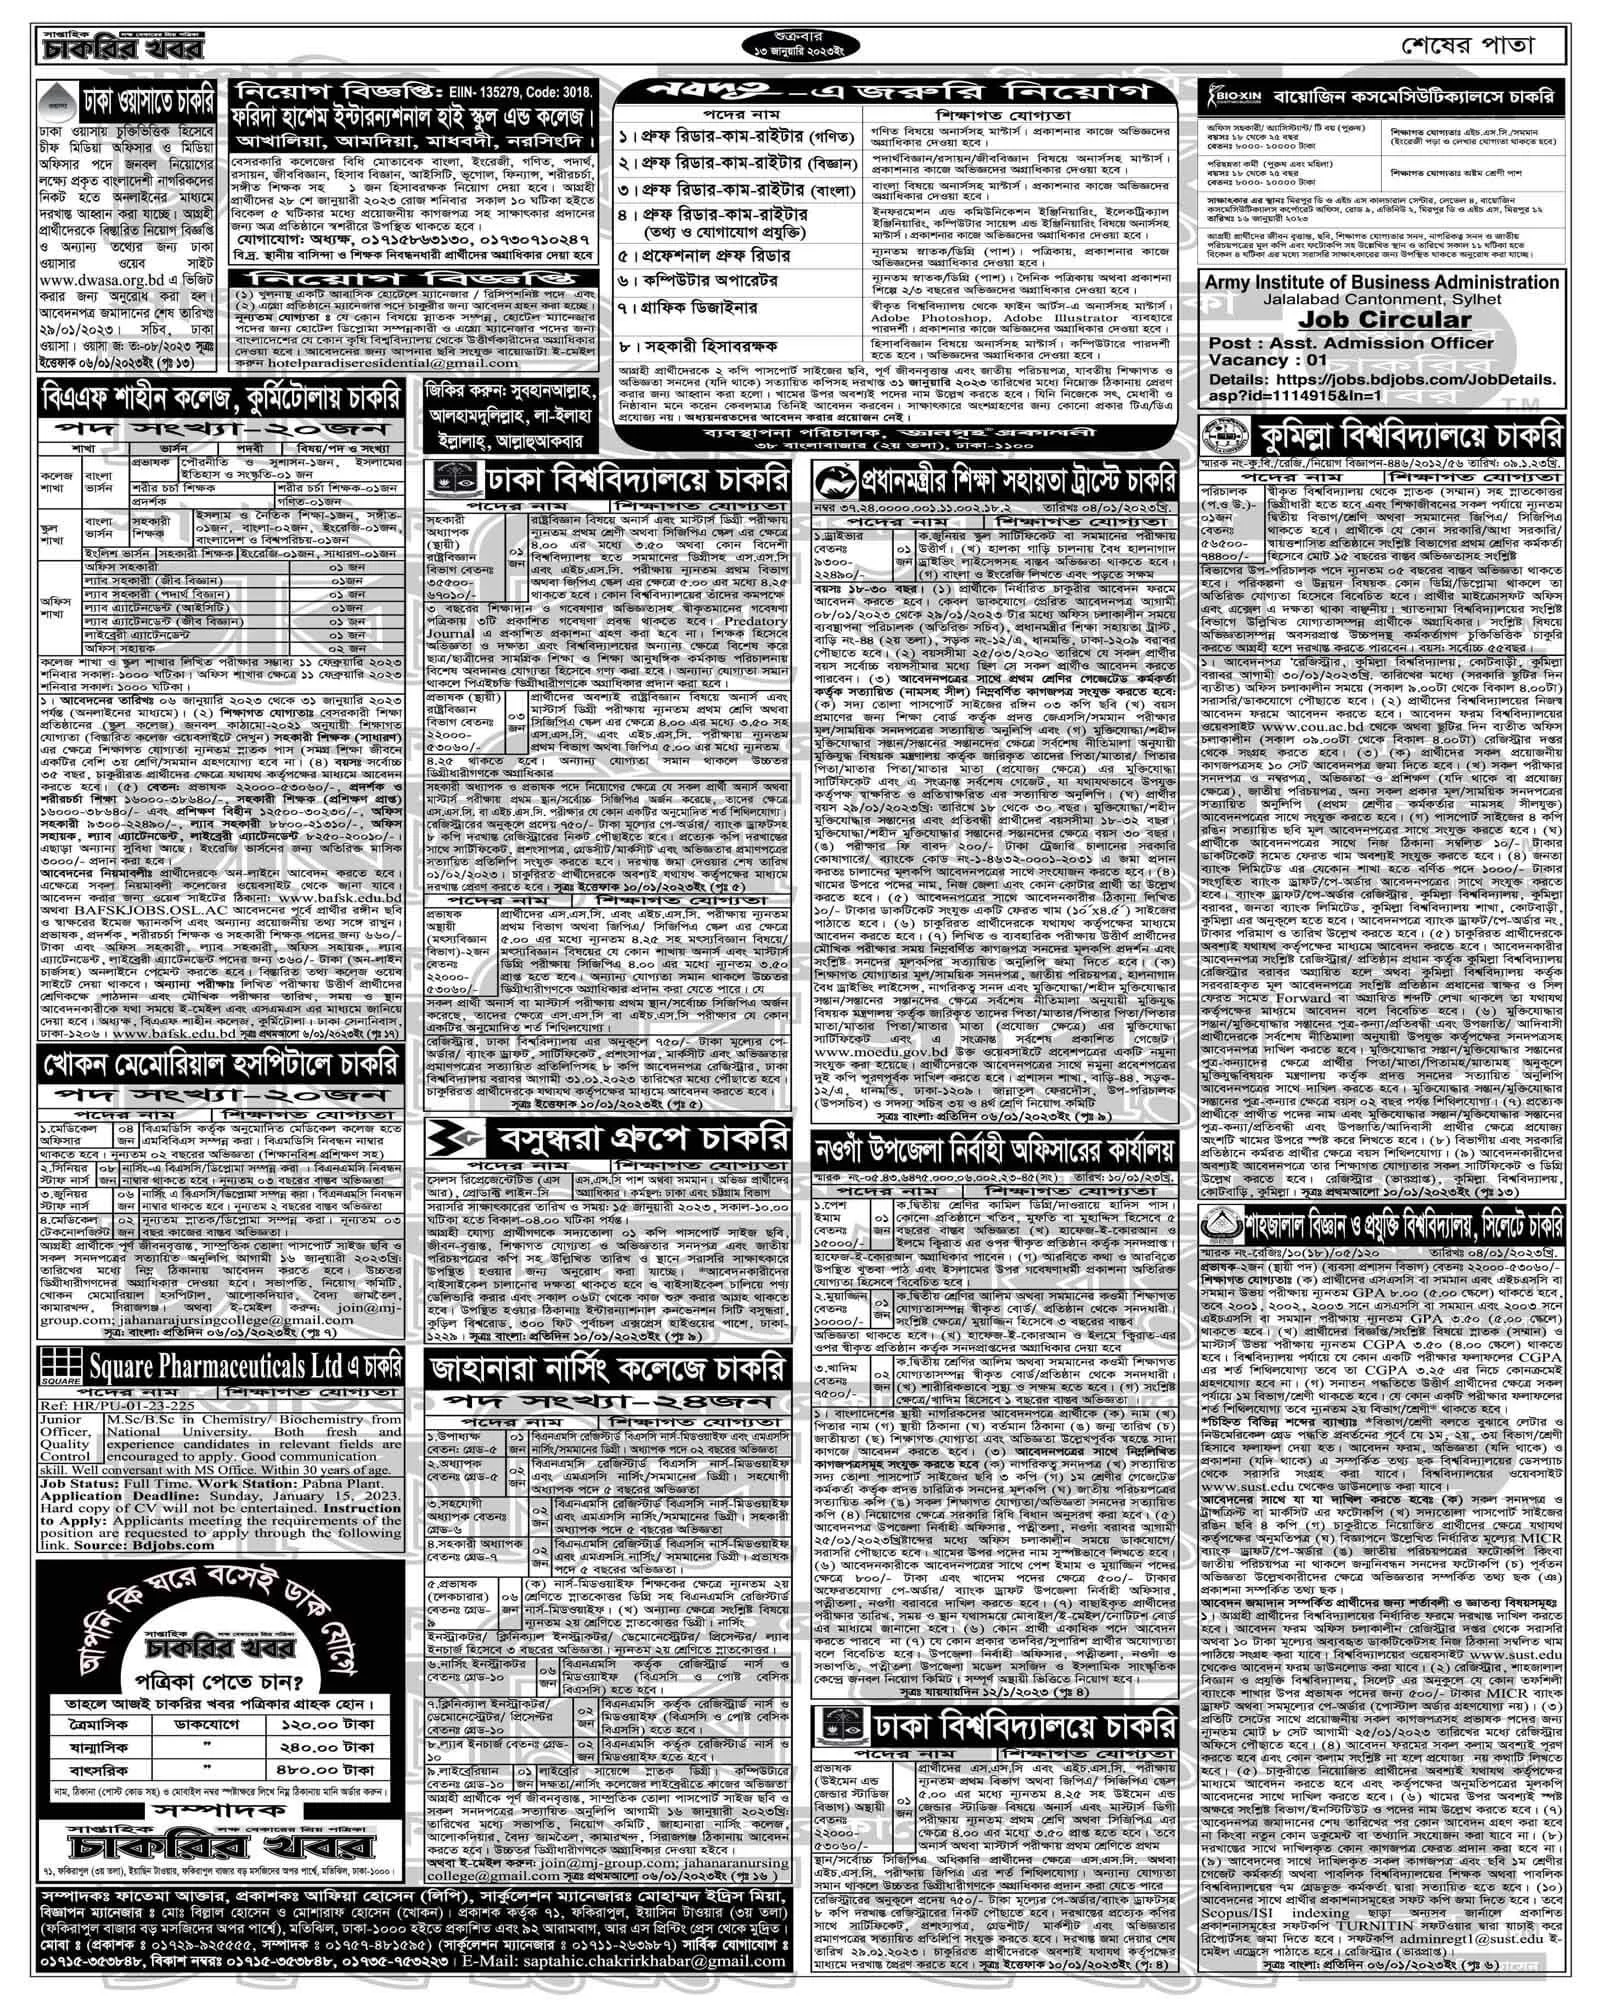 সপ্তাহিক চাকরির পত্রিকা/খবর ২০/০১/২০২৩ PDF Download । Saptahik Chakrir Khobor pdf 2023